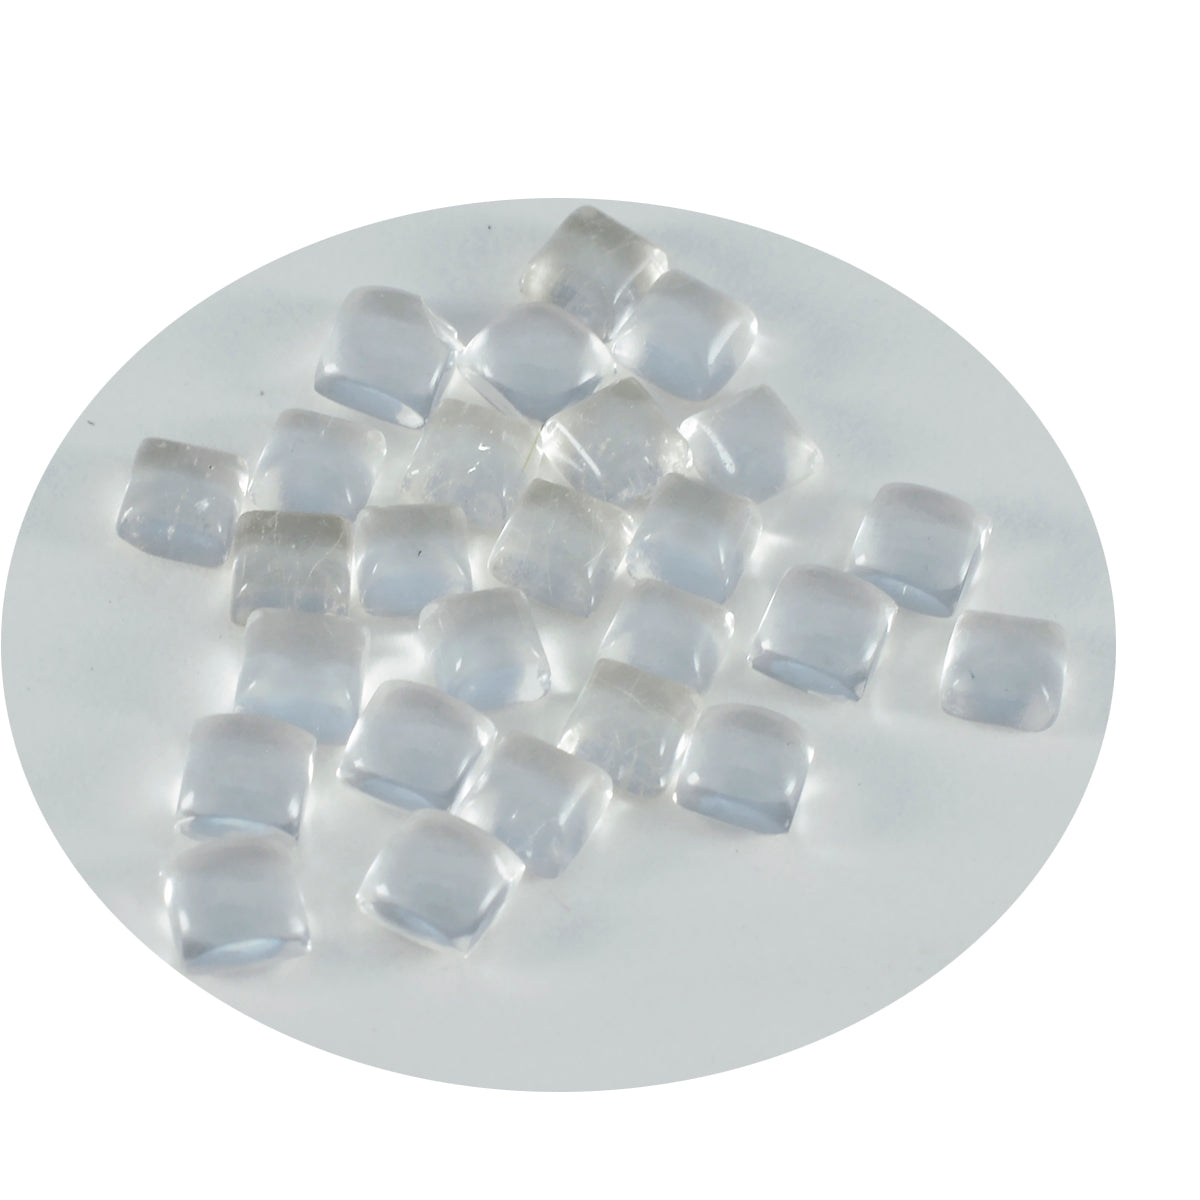 riyogems 1 шт. кабошон из белого кристалла кварца 5x5 мм квадратной формы, красивые качественные драгоценные камни